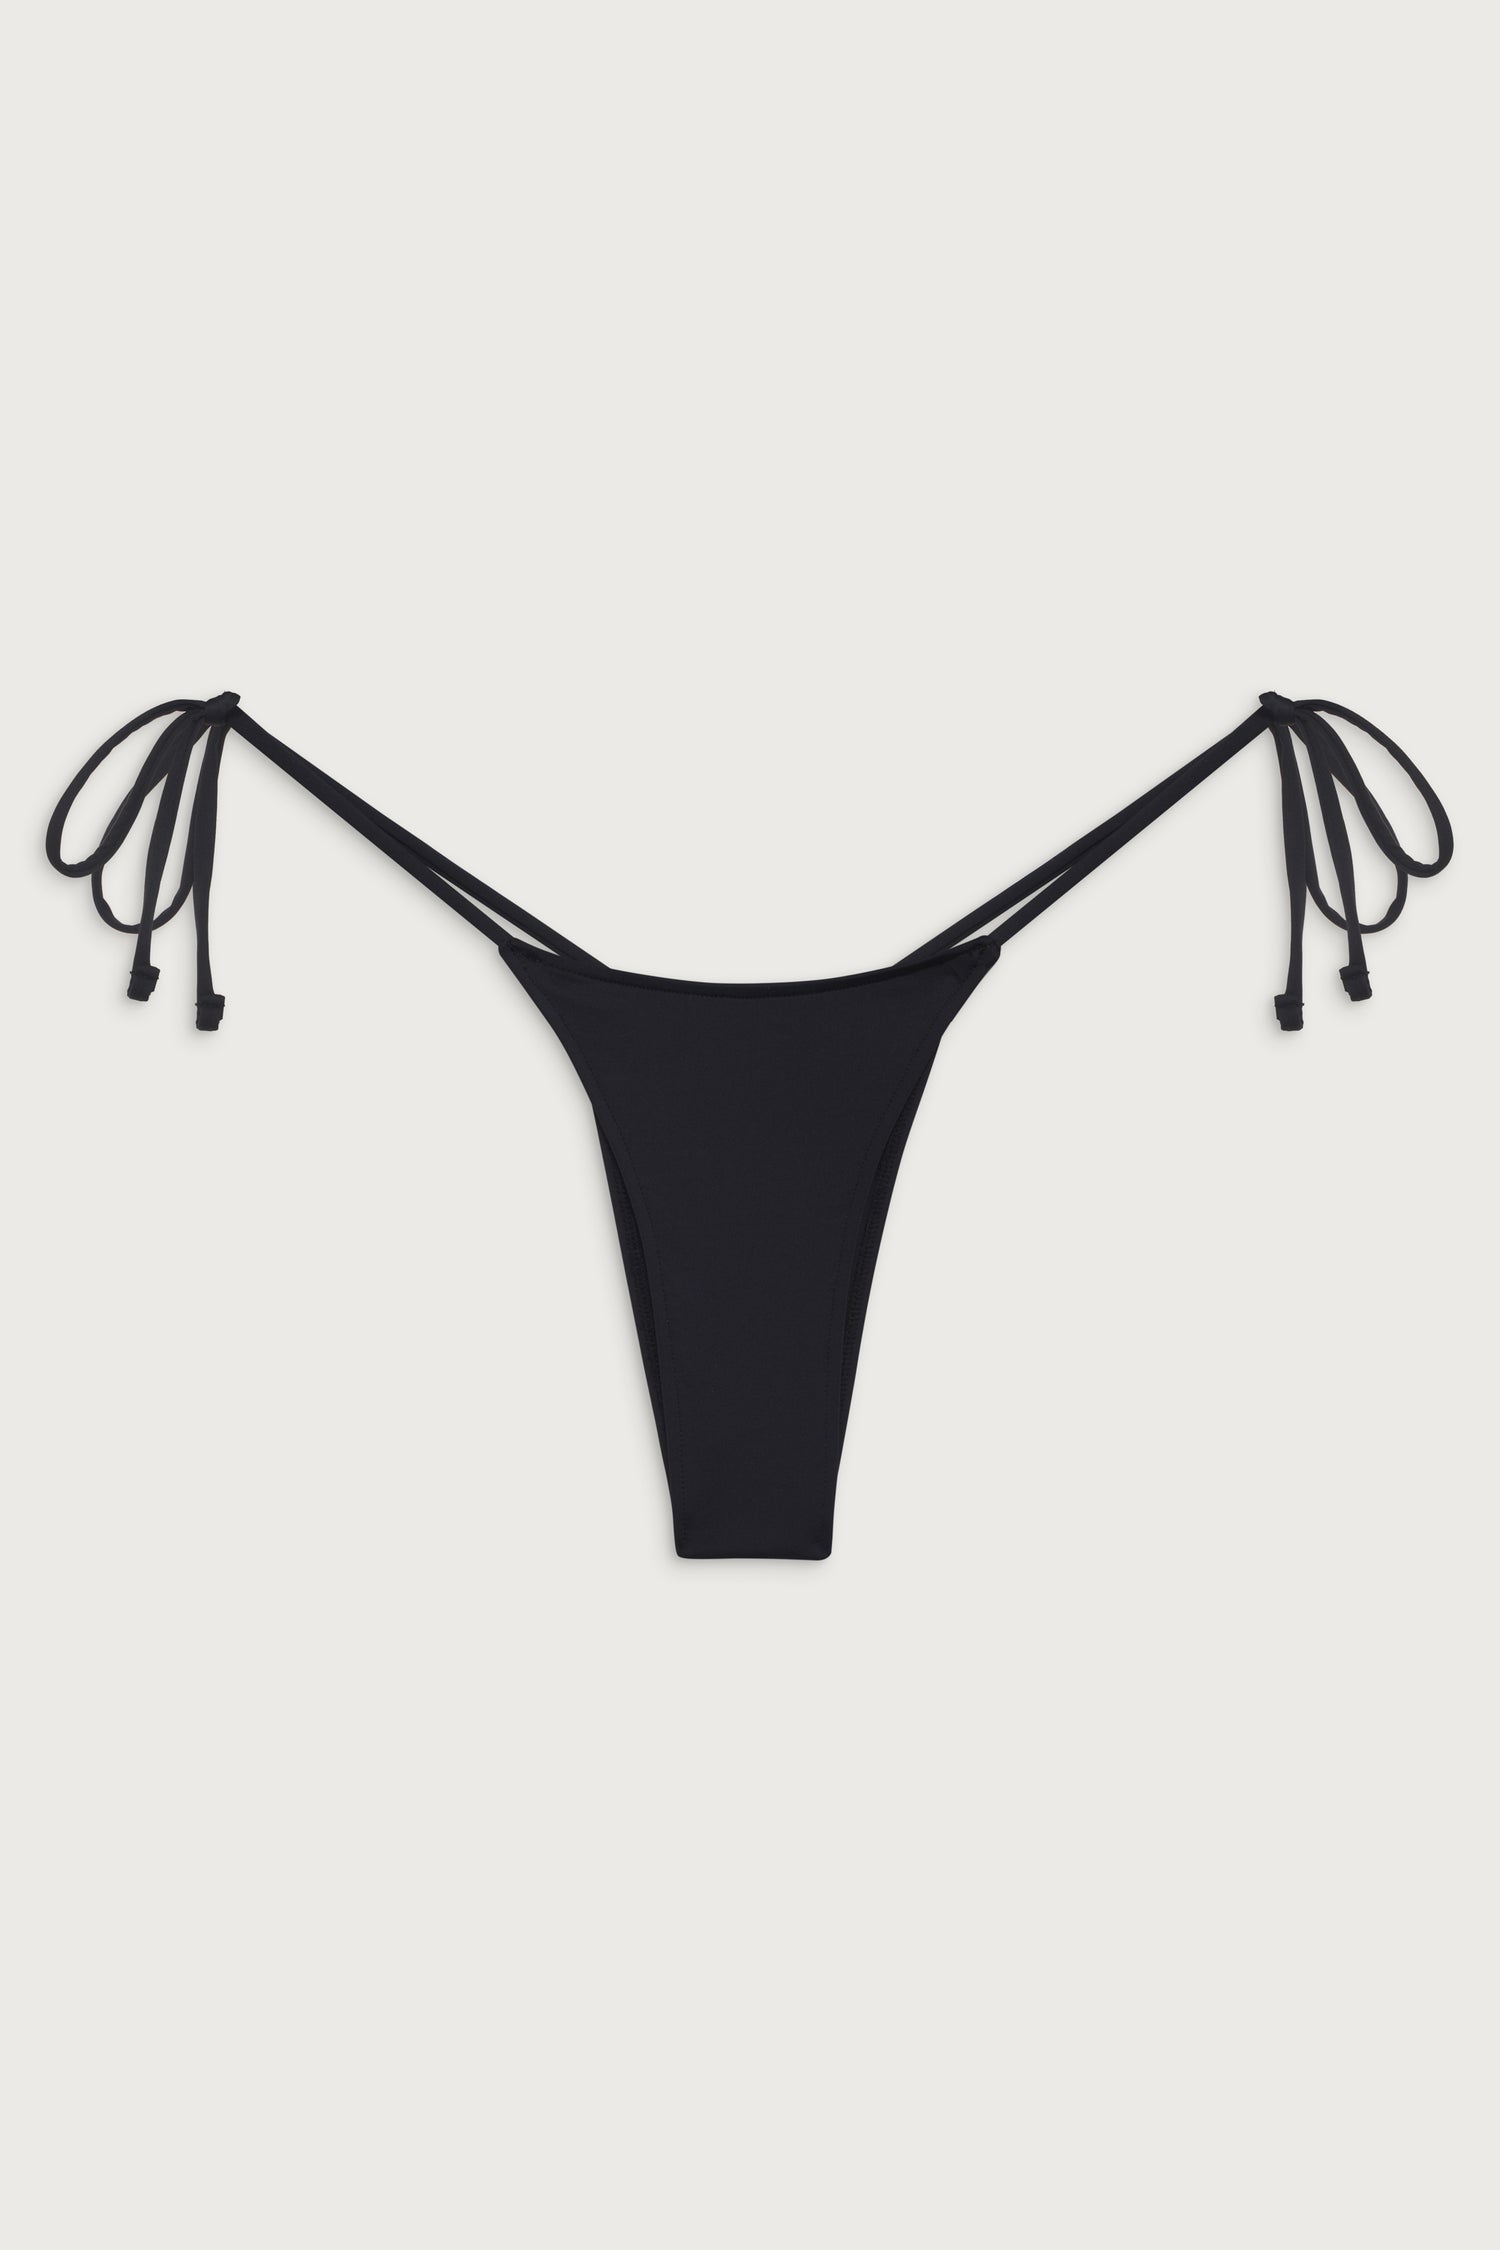 Black Low Waist Maternity Underwear - The Divine